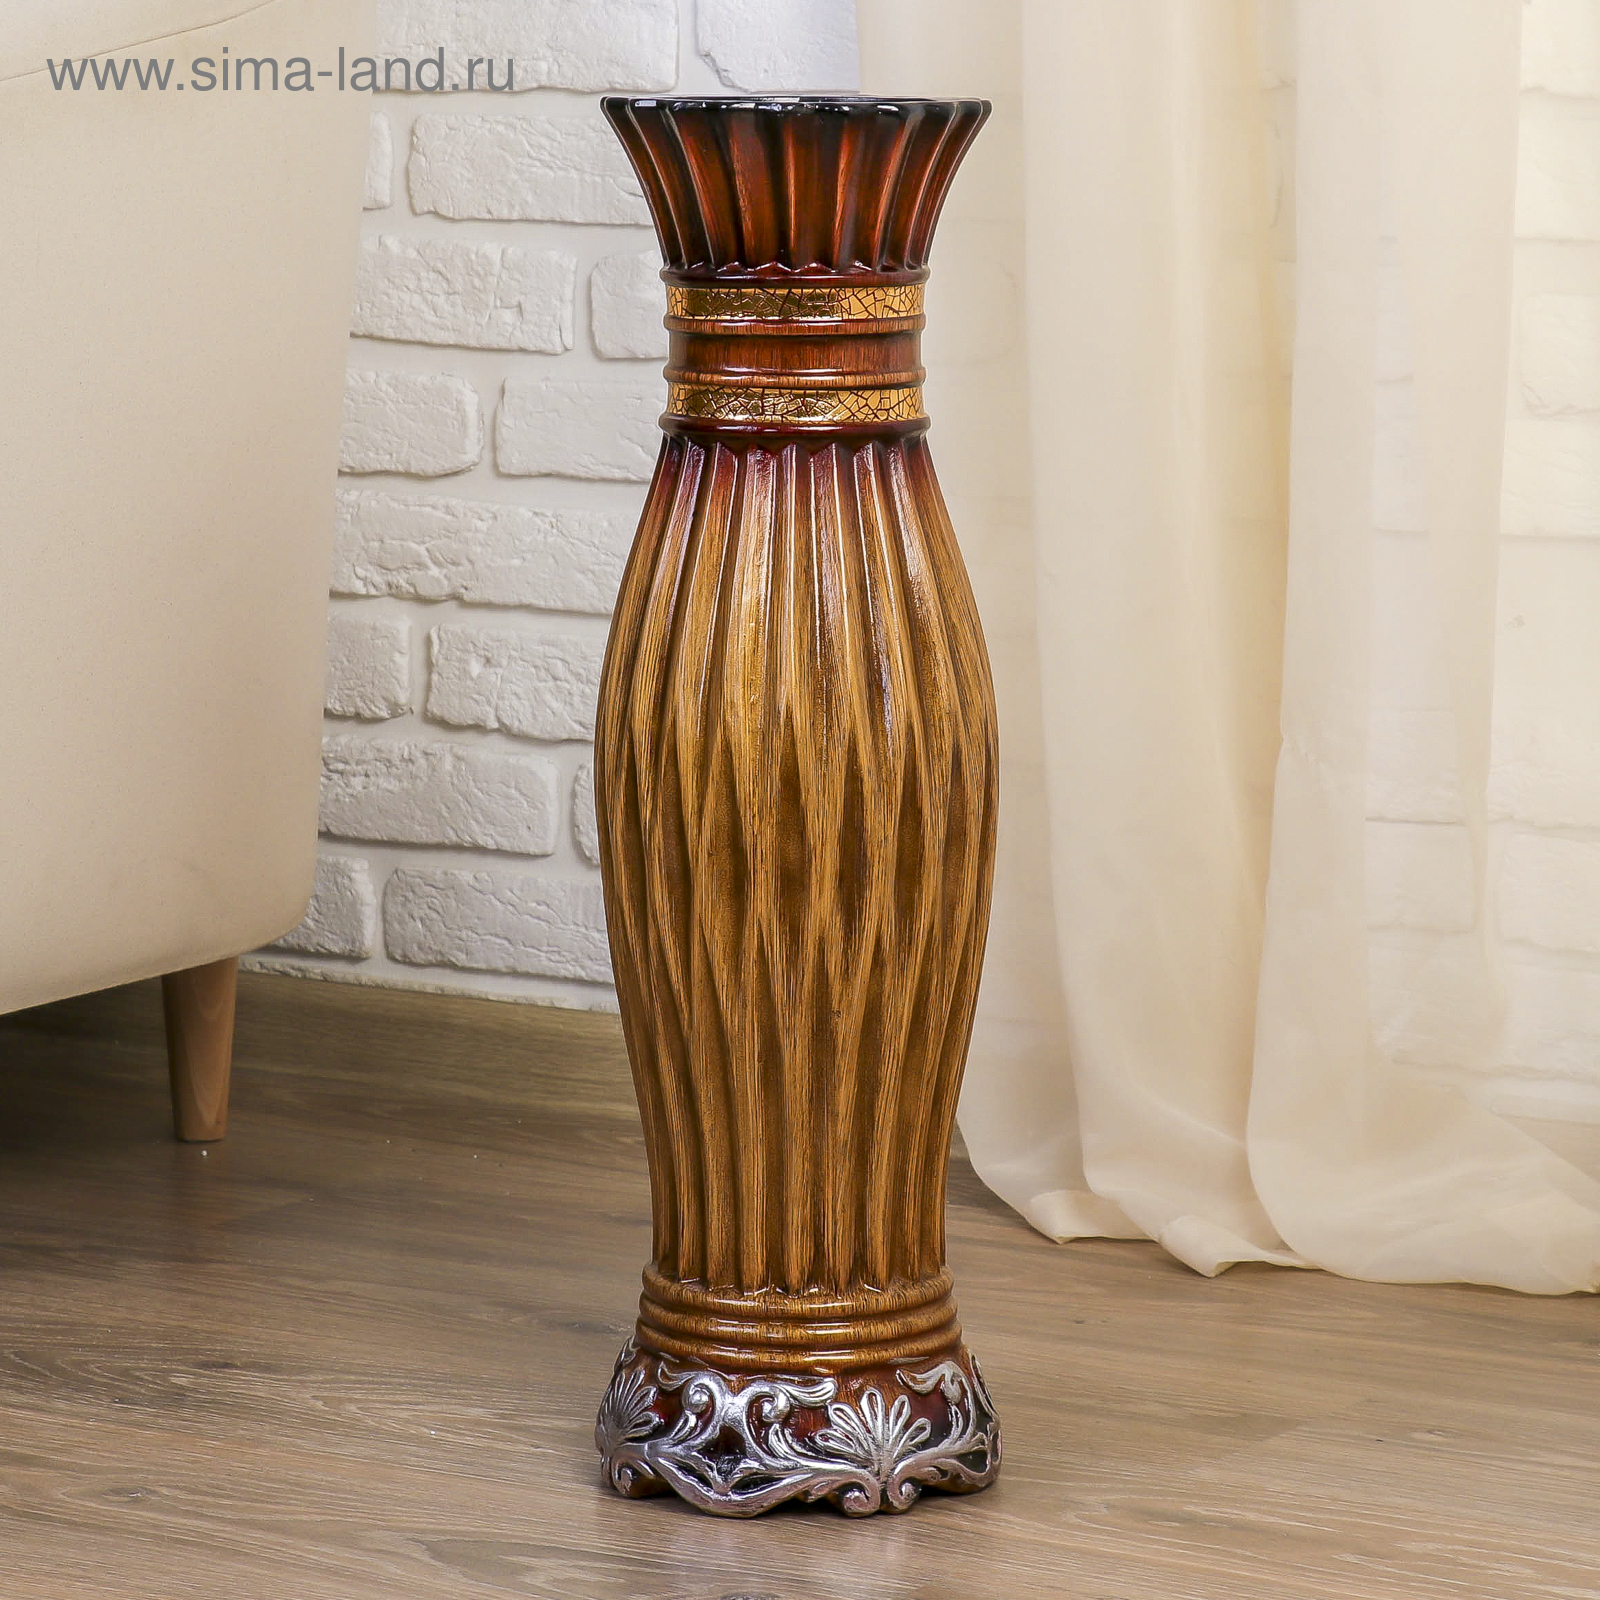 Сима-ленд ваза напольная Дионелла